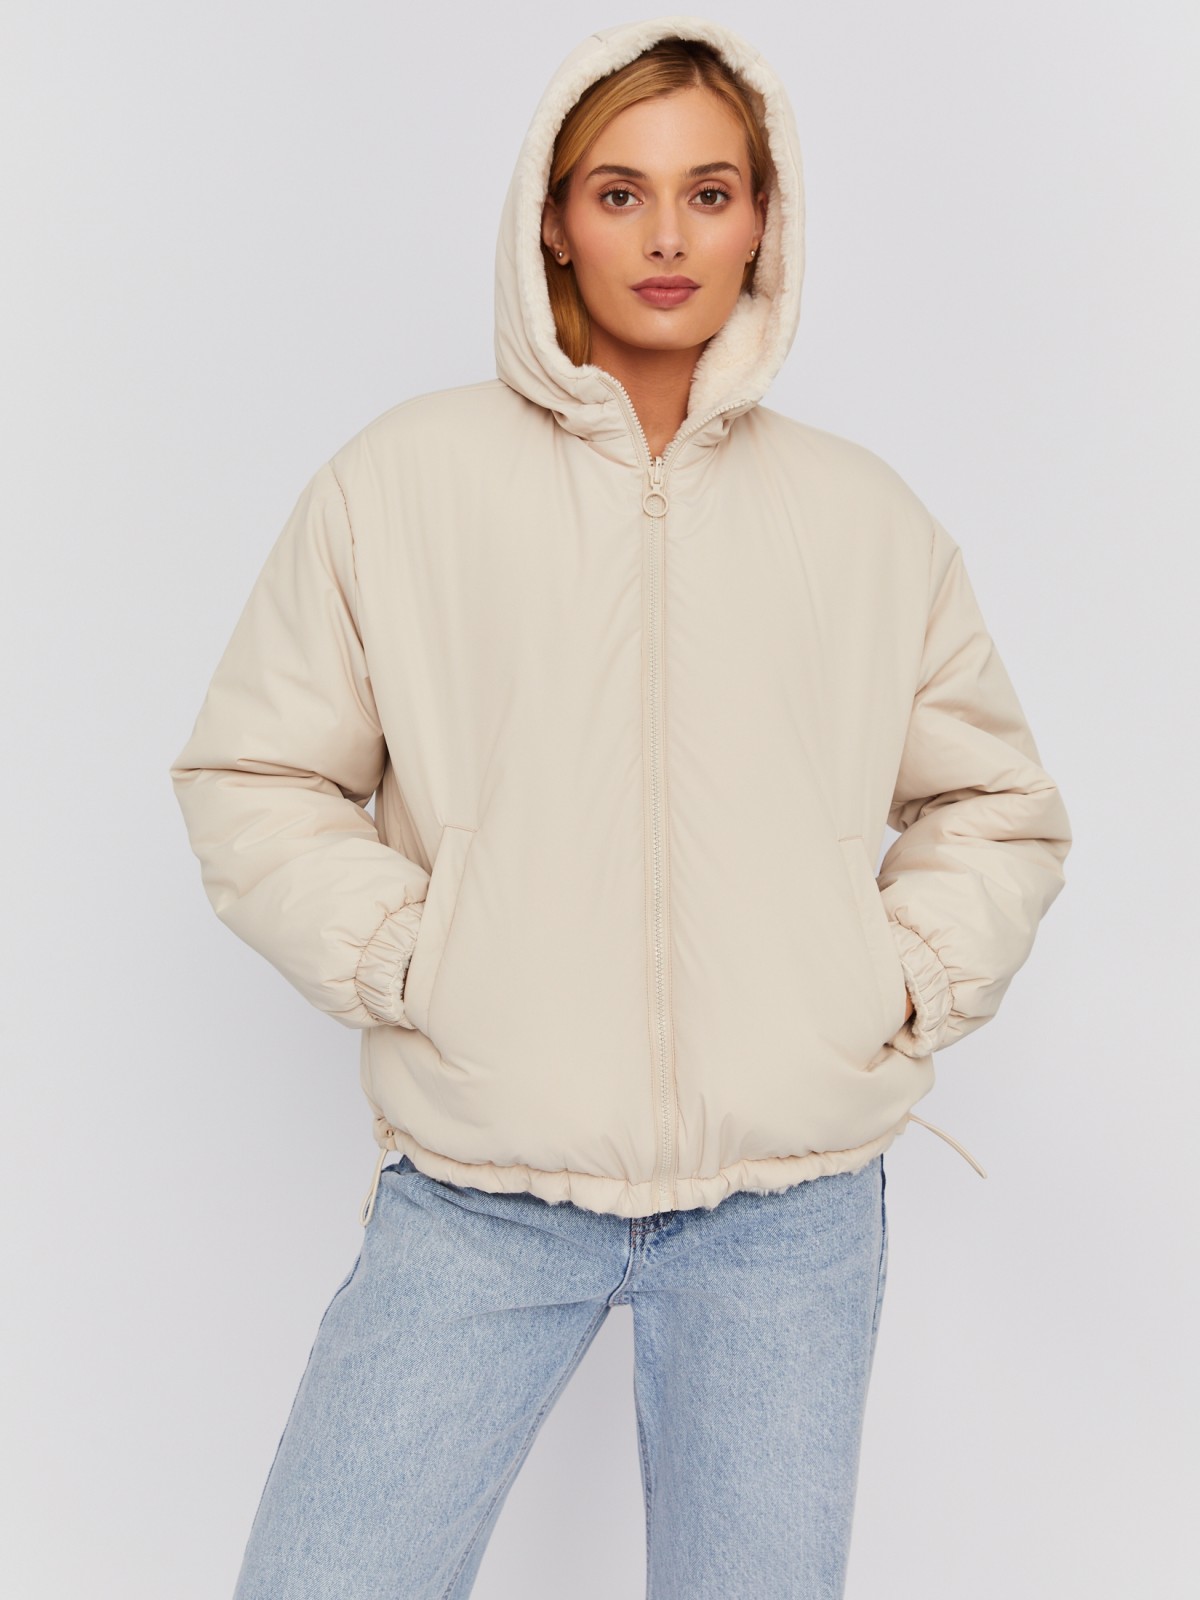 Двусторонняя утеплённая куртка на синтепоне с капюшоном и искусственным мехом zolla 023335112304, цвет молоко, размер XS - фото 5